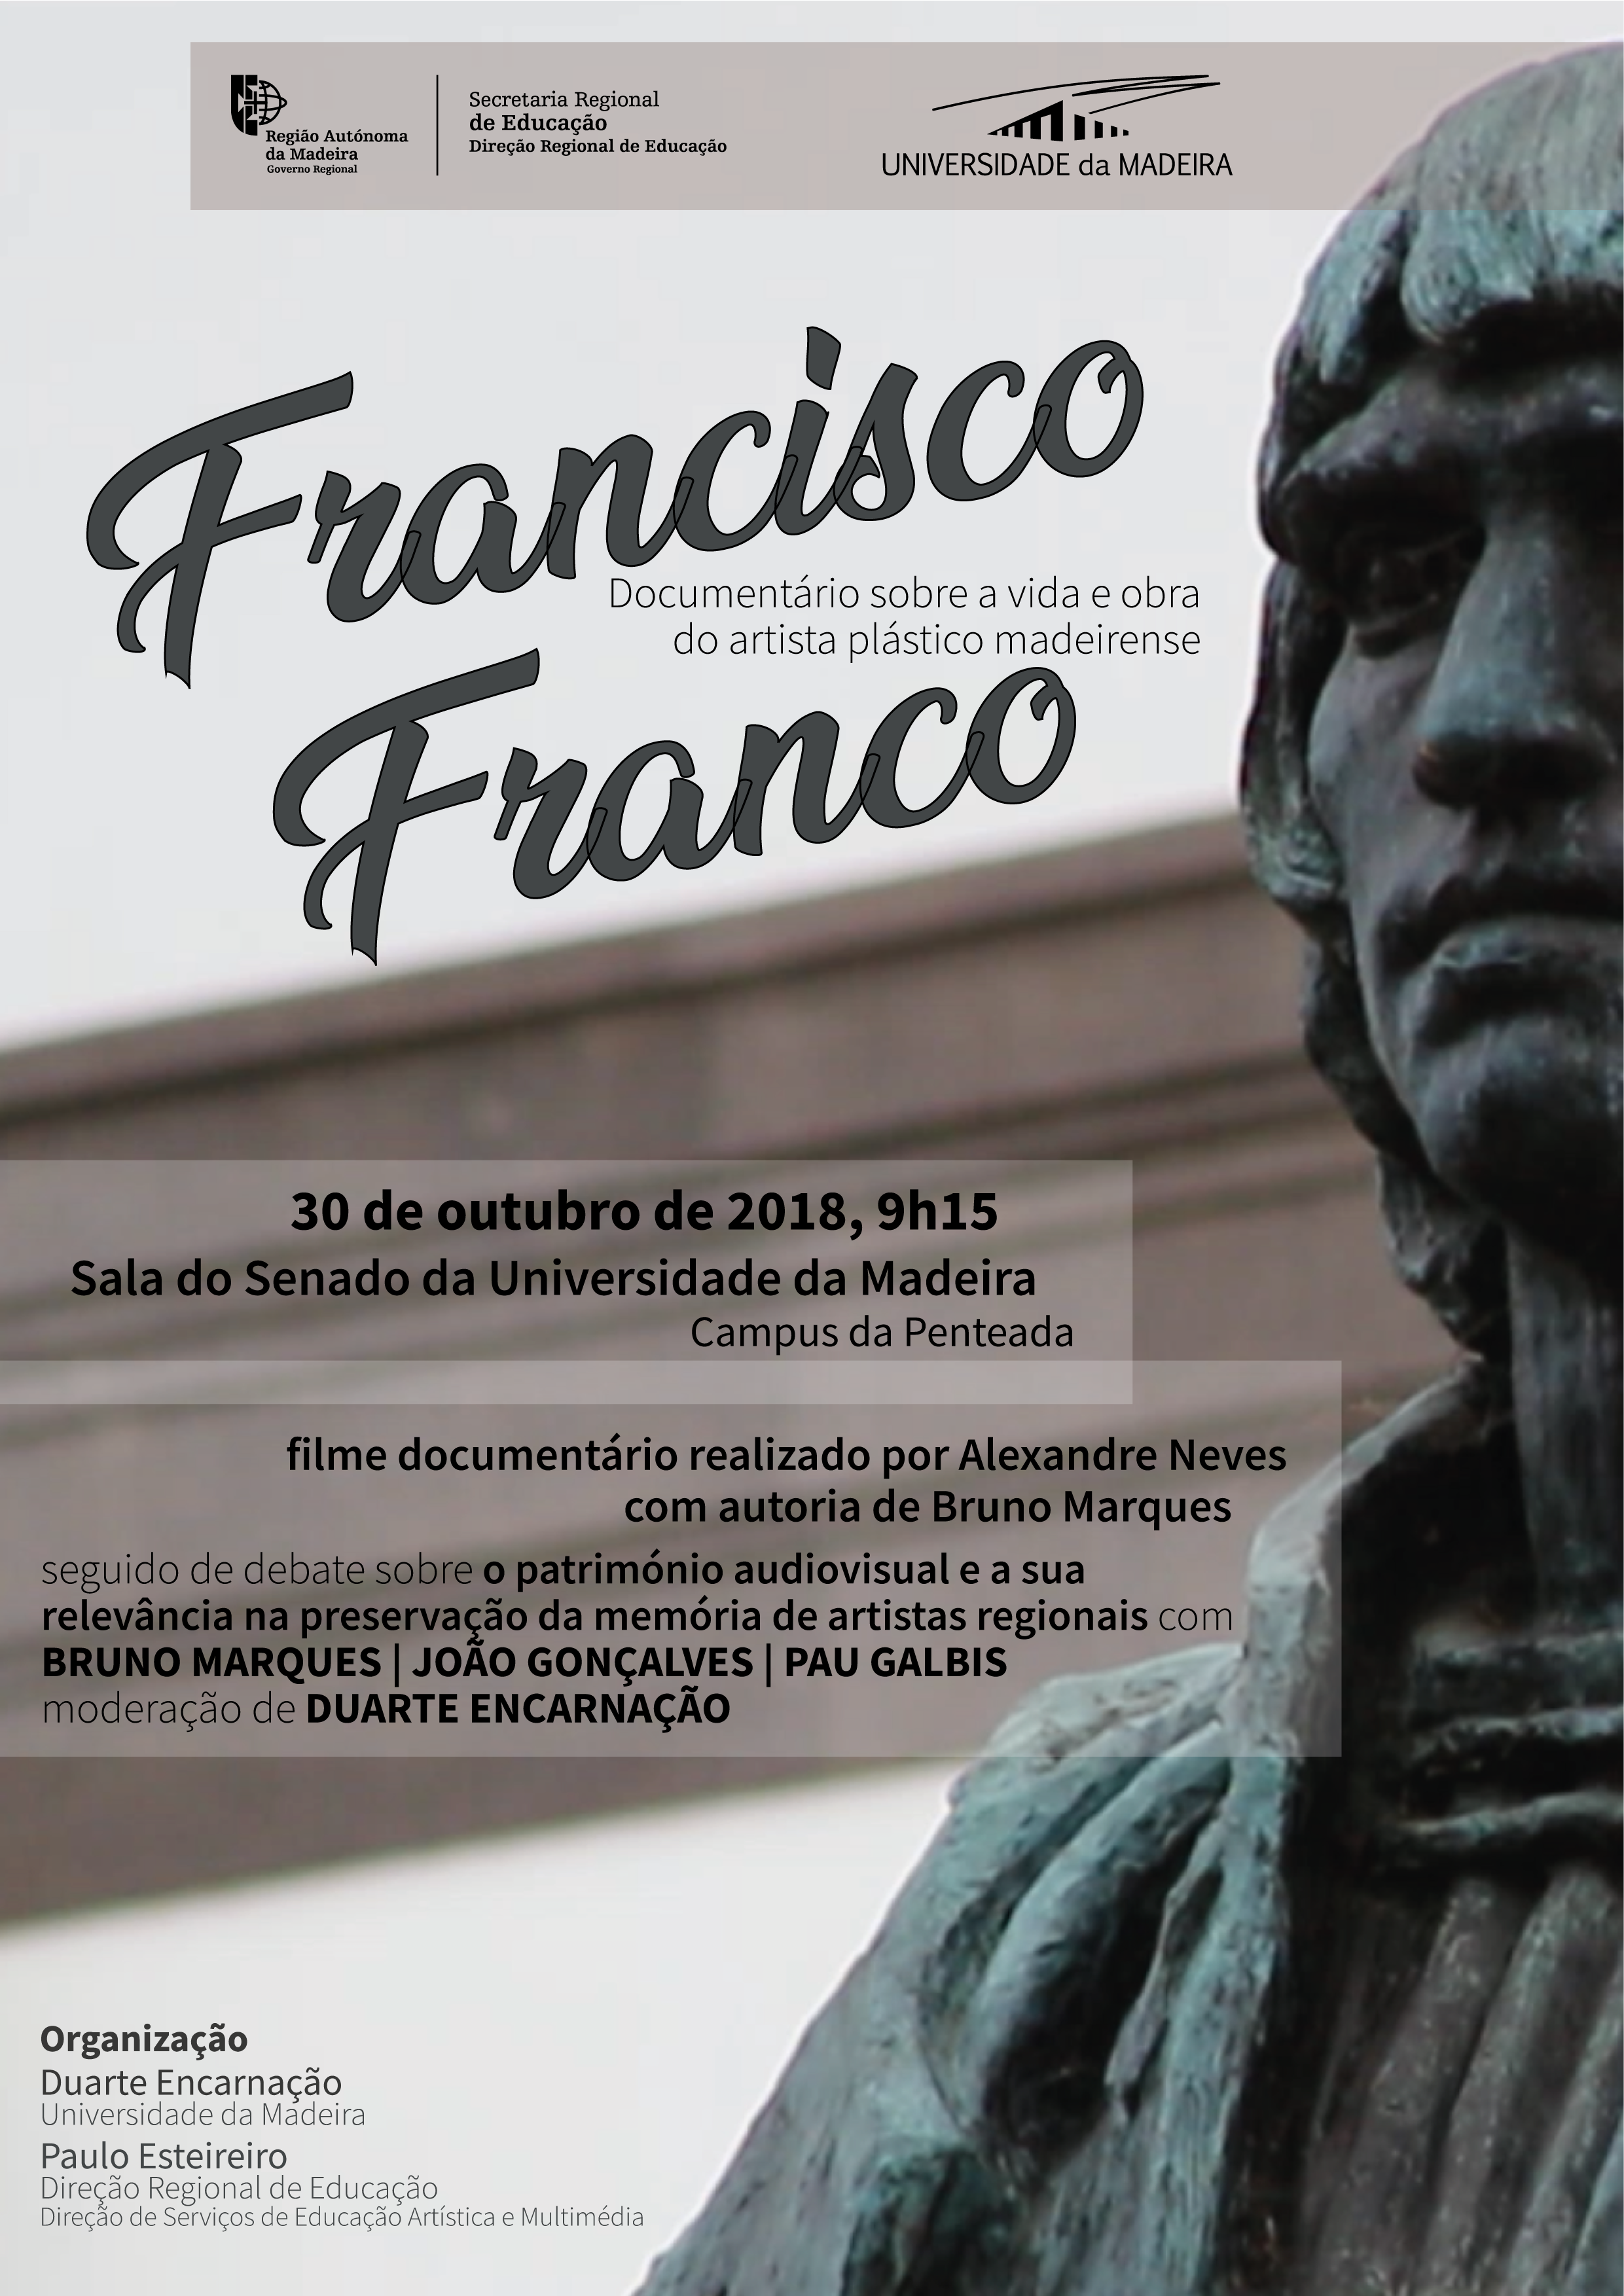 Documentário 'Francisco Franco' exibido no próximo dia 30 de outubro